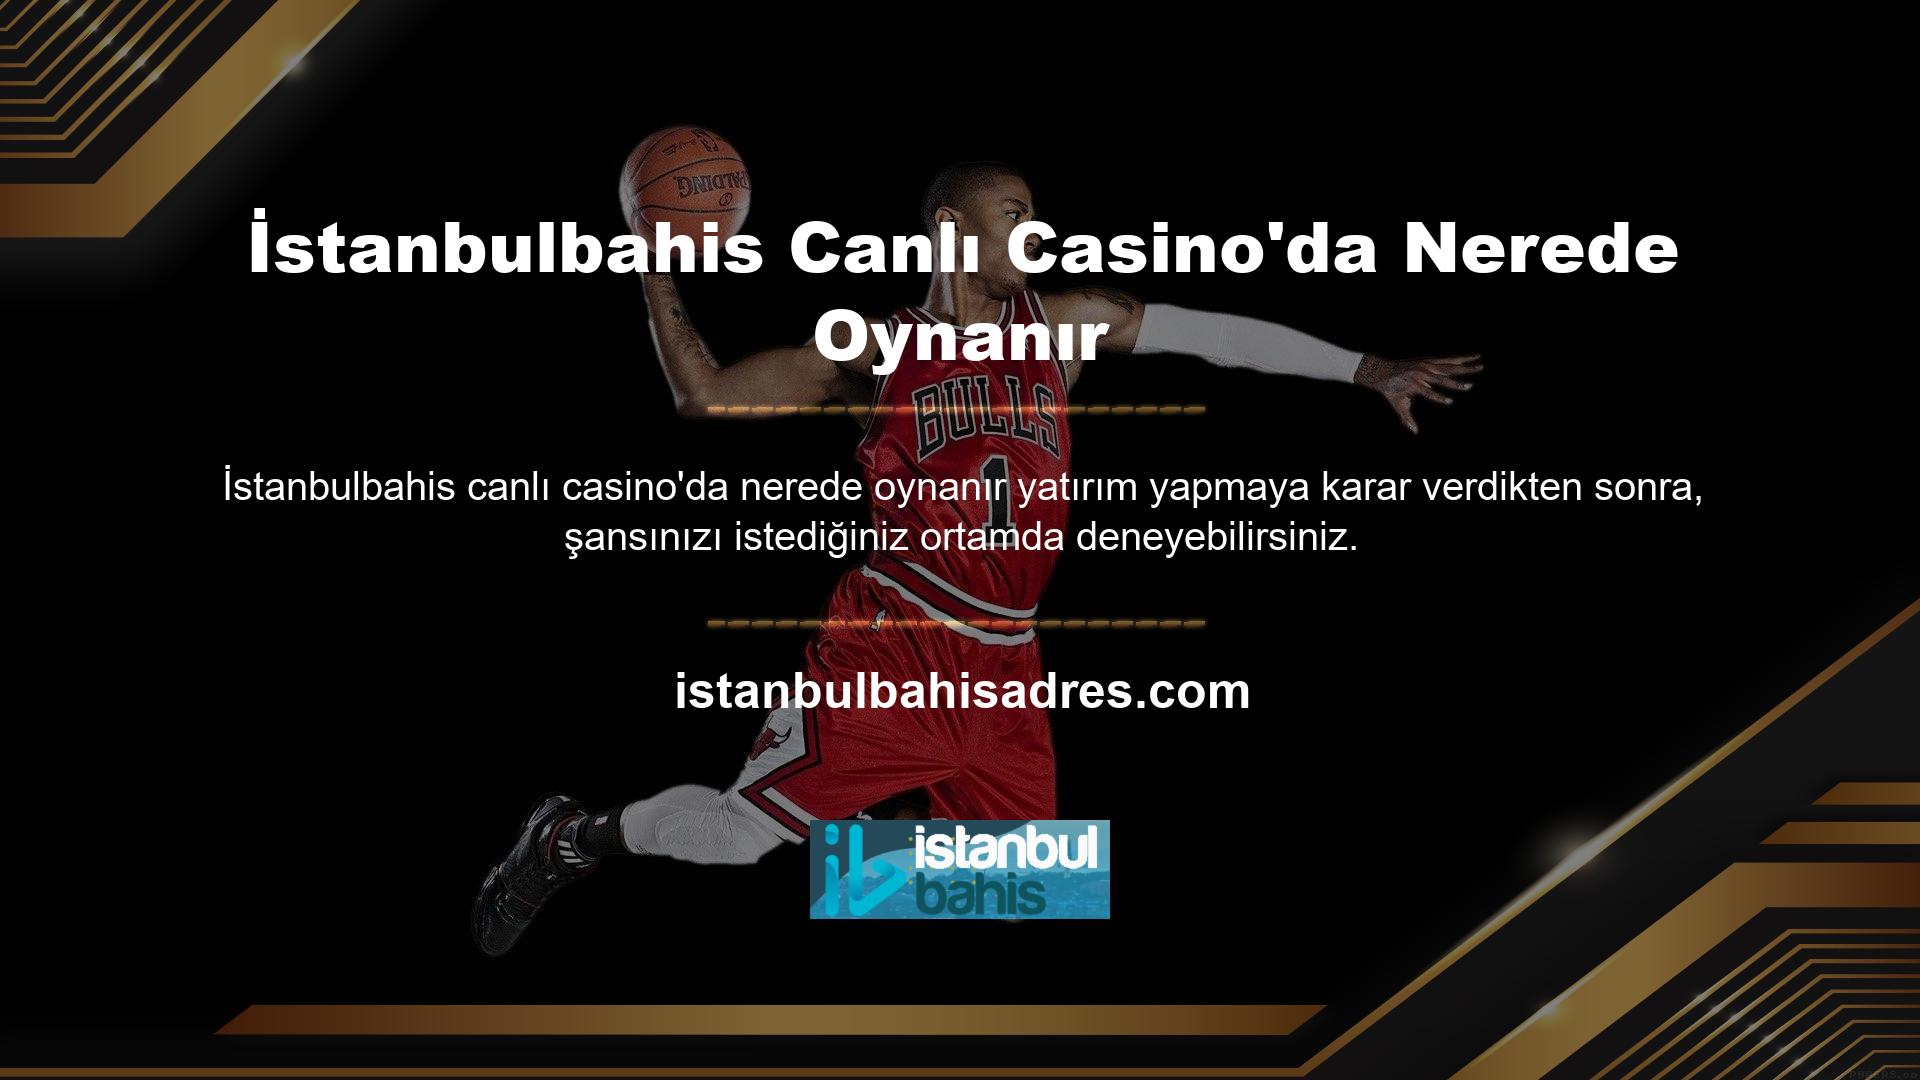 Nerede canlı casino oynayabilirim Yabancı casino siteleri bu soruyu Türkçe olarak cevaplıyor